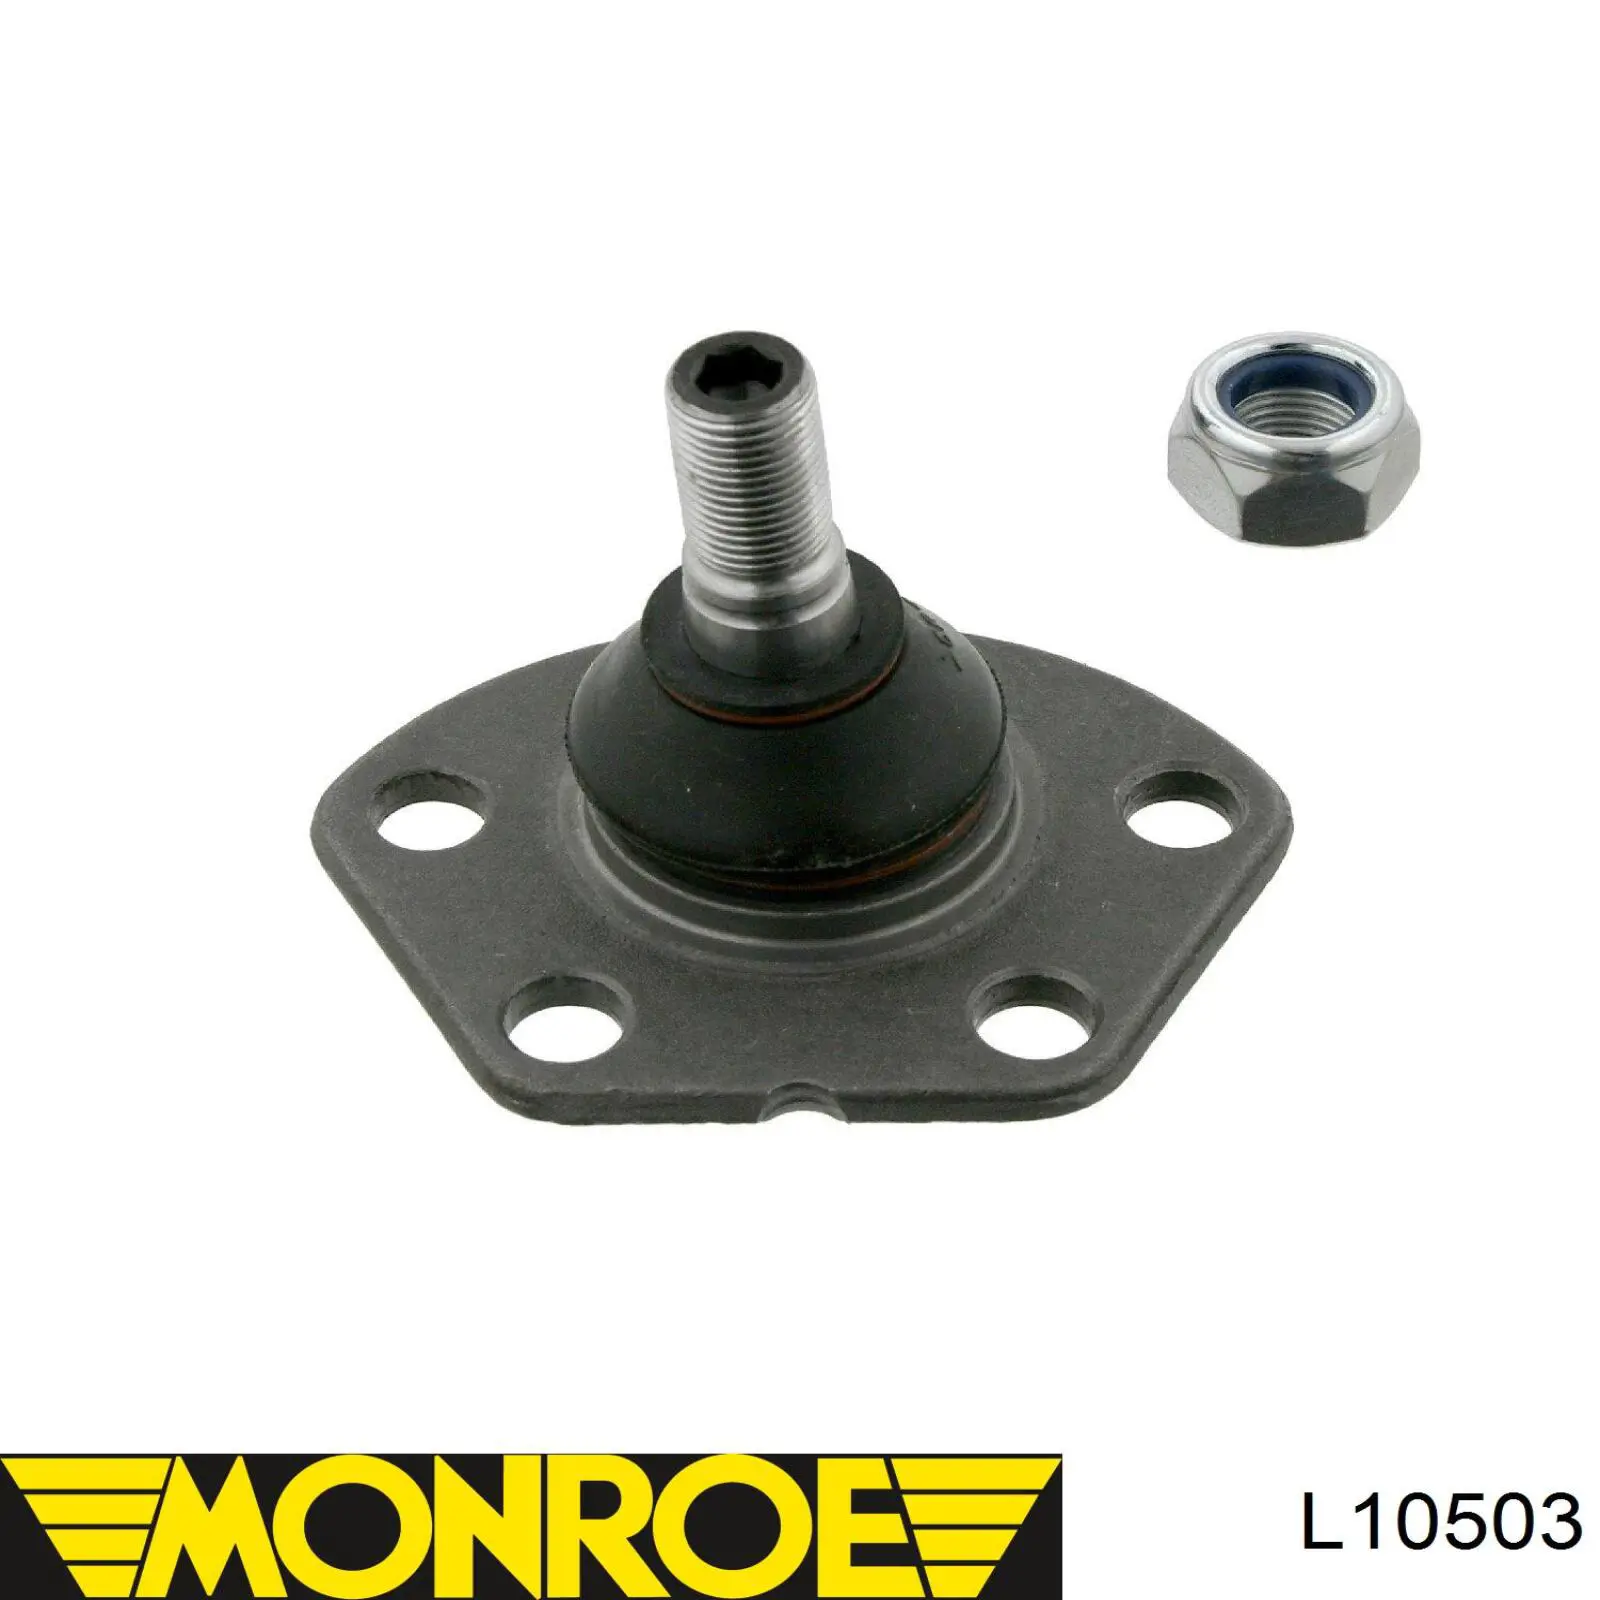 L10503 Monroe rótula de suspensión inferior